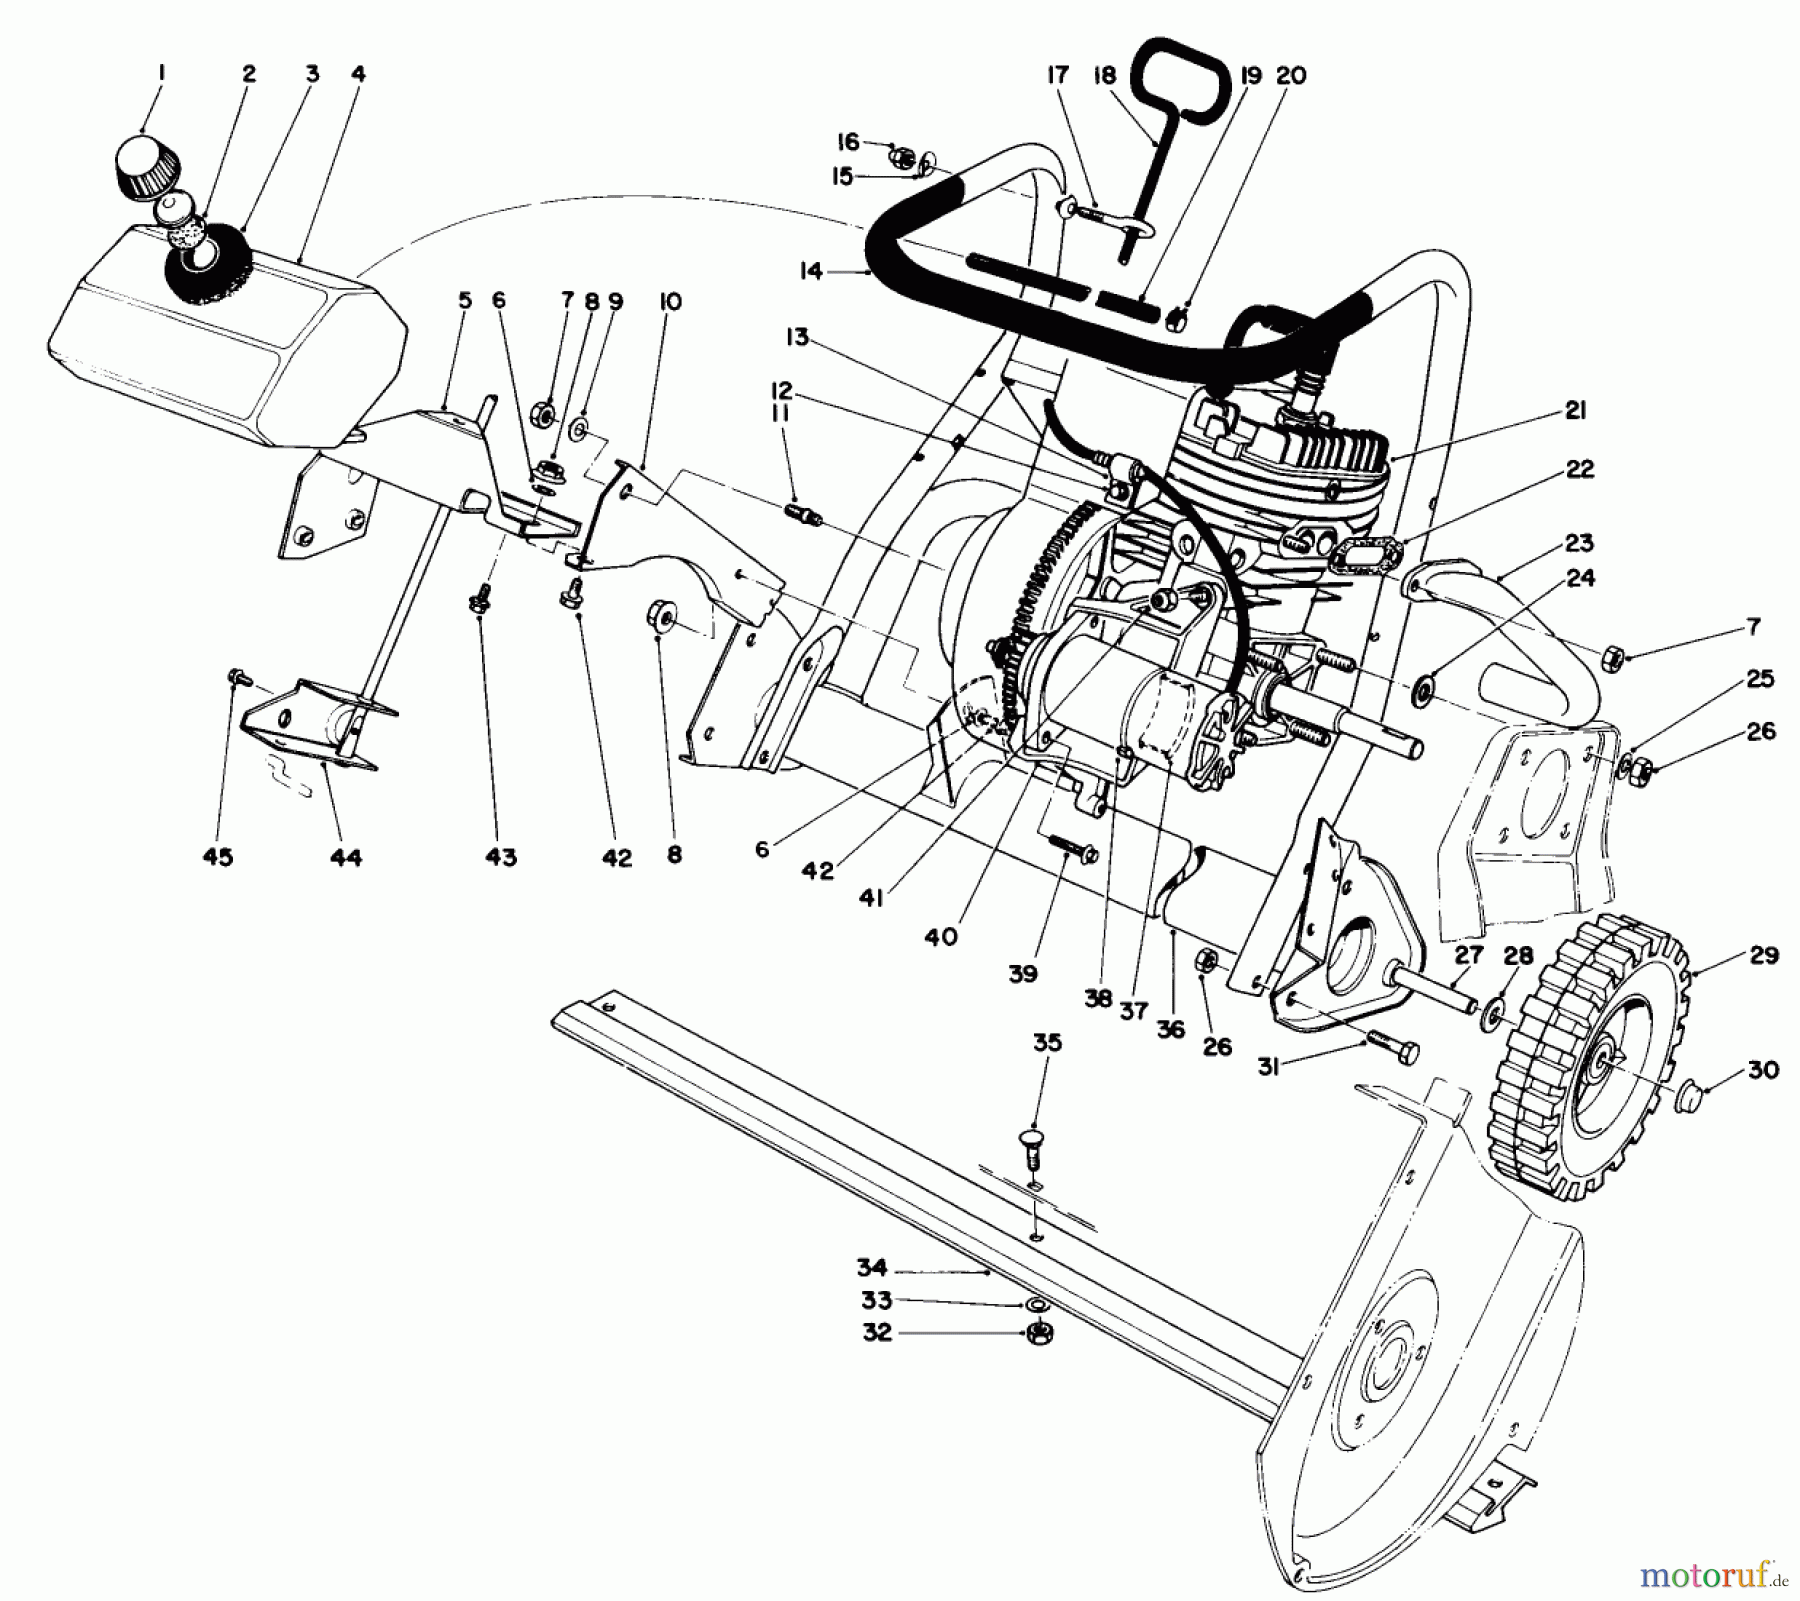  Toro Neu Snow Blowers/Snow Throwers Seite 1 38162 (S-620) - Toro S-620 Snowthrower, 1989 (9000001-9999999) ENGINE ASSEMBLY